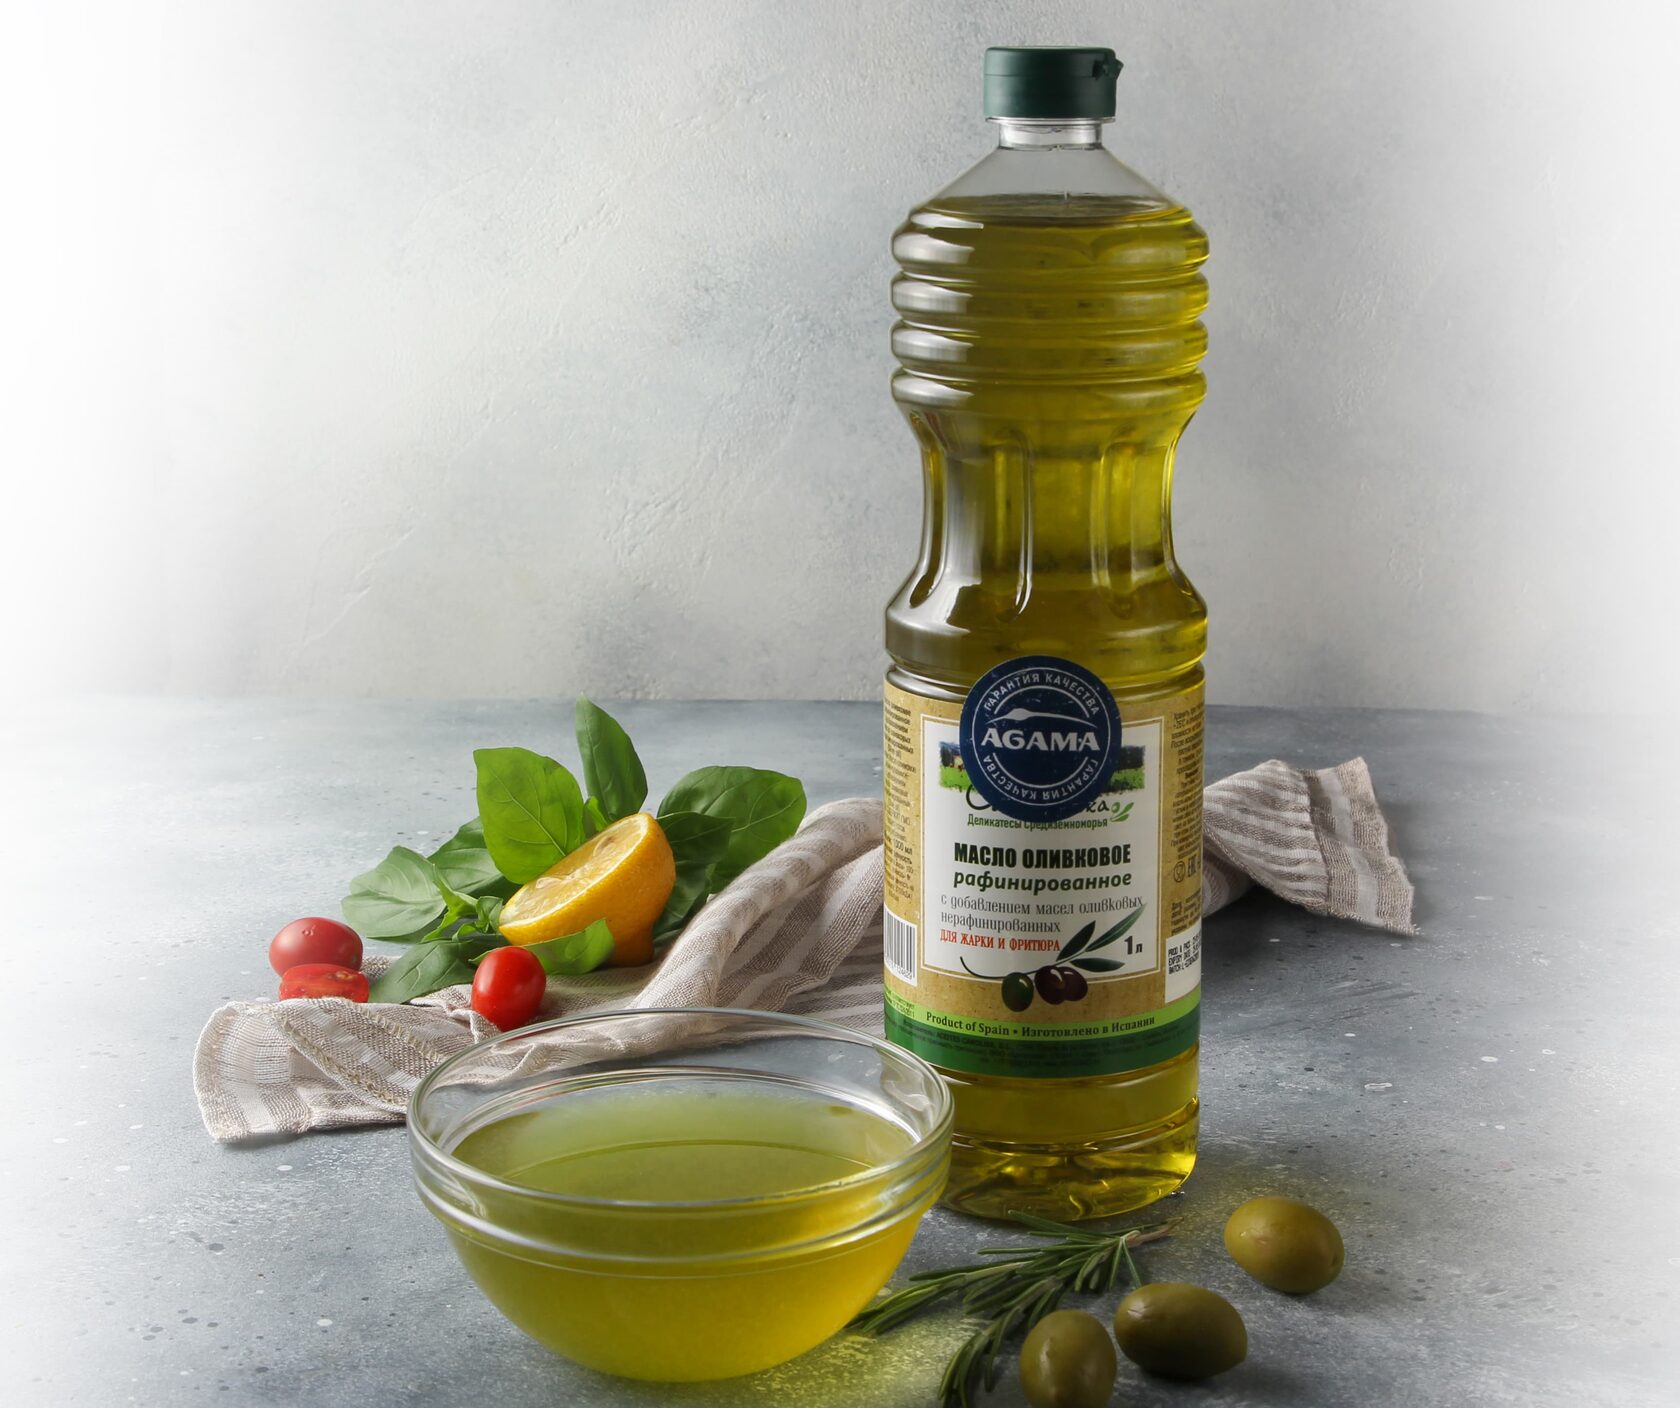 Натуральные нерафинированные масла. Масло оливковое "Olivateca" Extra Virgin 1000 мл. Оливковое масло Olive Oil product, 1000 мл. Масло оливковое Olivateca рафинированное 1л. Sofos Pomace масло оливковое , 500 мл.